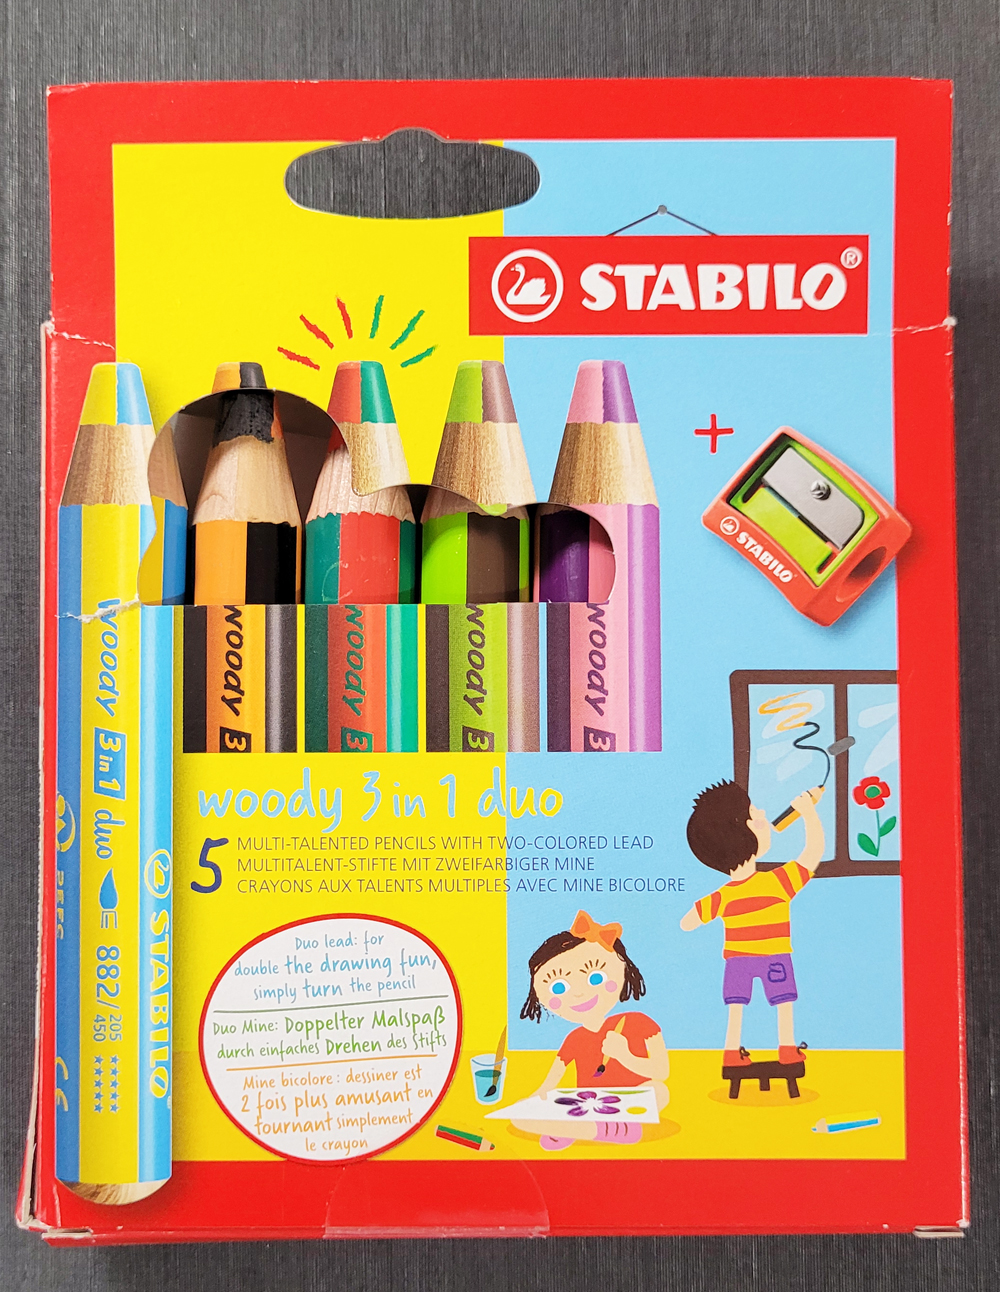 Multi-talented pencil STABILO woody 3 in 1